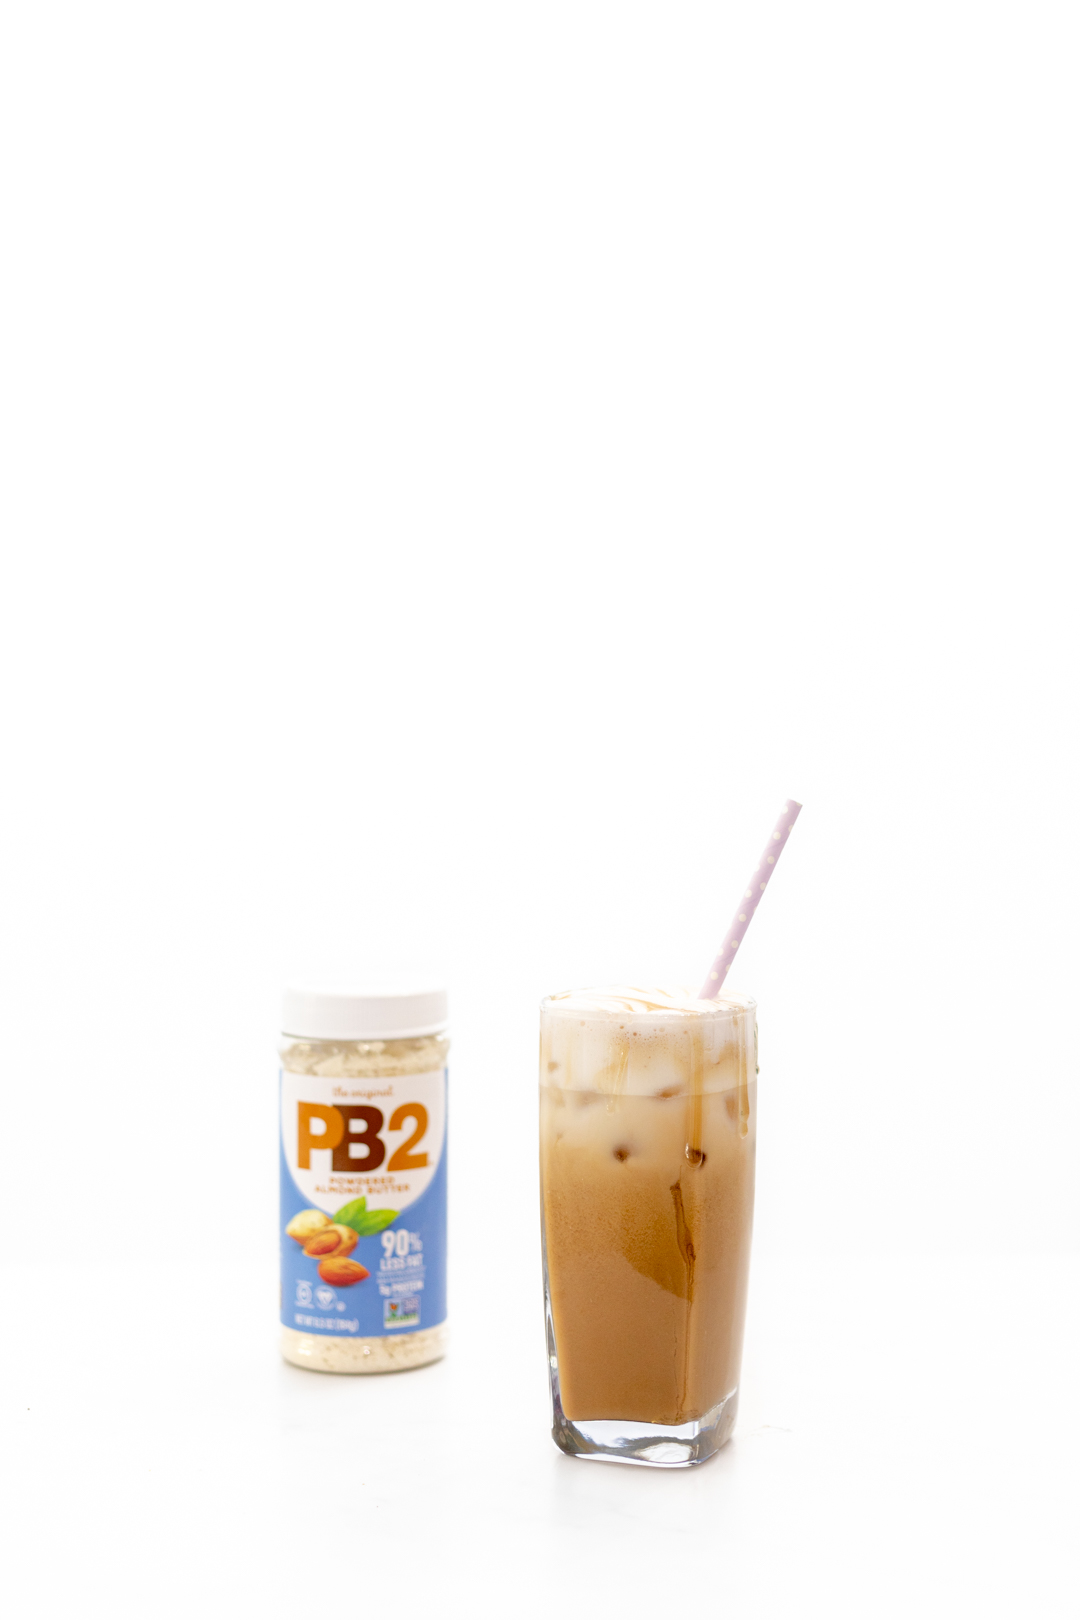 iced coffee made with PB 2